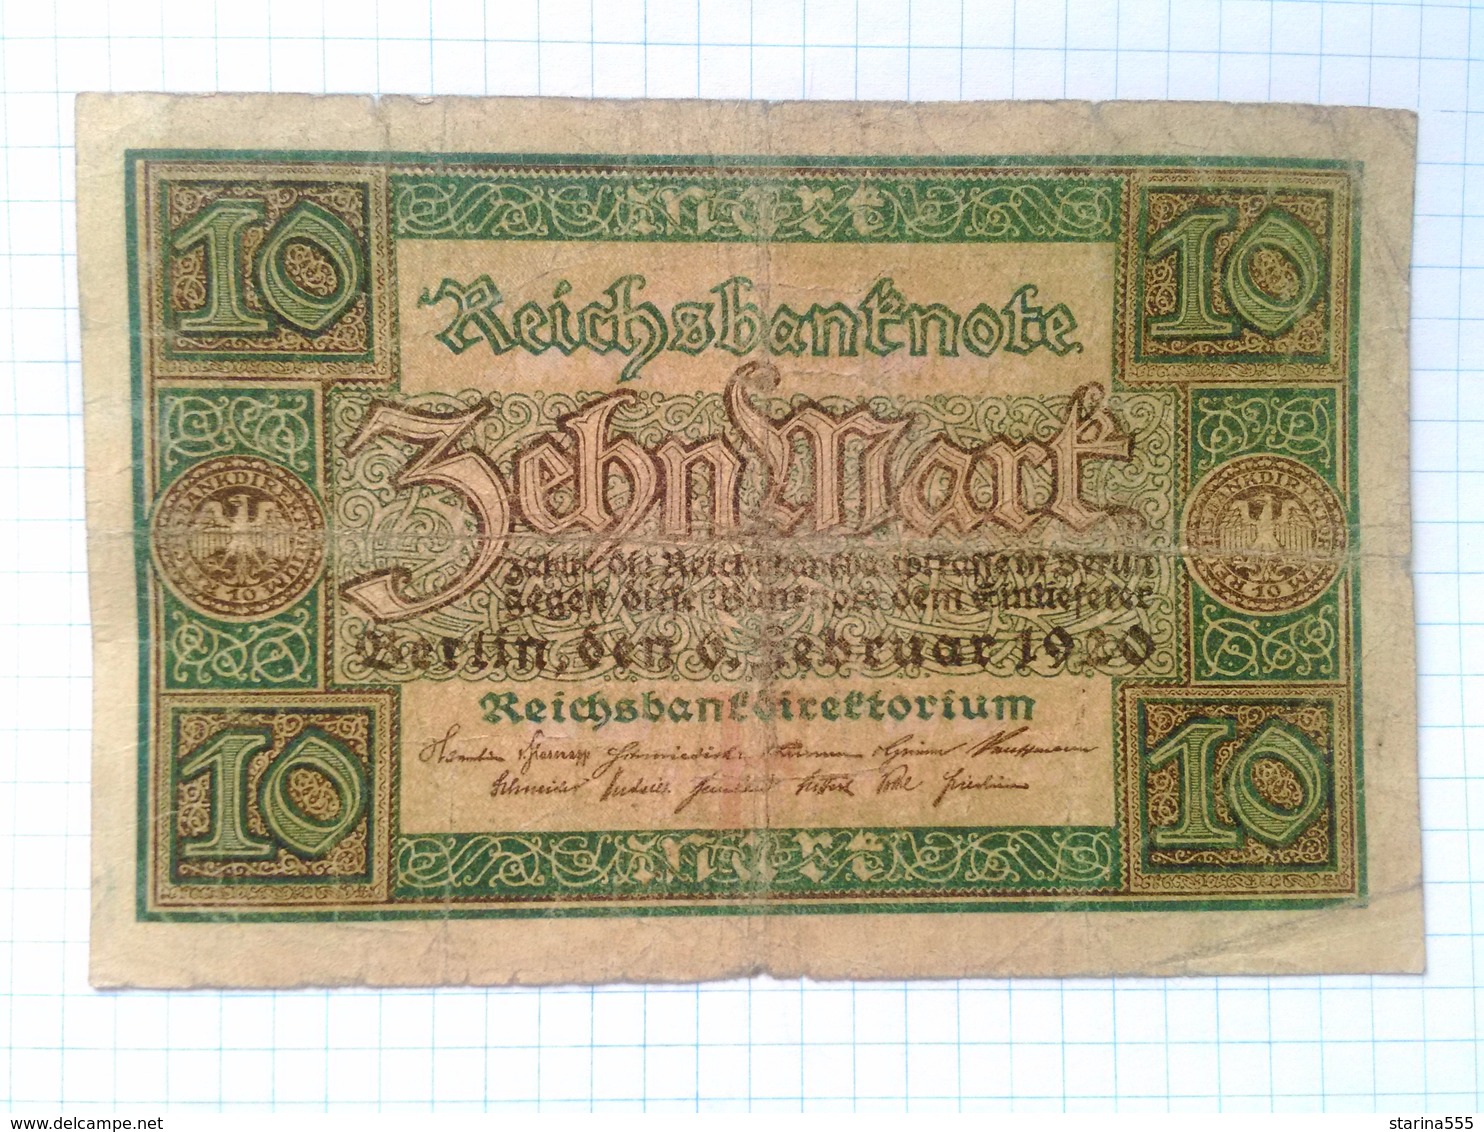 Germany, Weimar Republic. Reichsbanknote 10 Mark. 1920. Condition - Photo. 1-6 - 10 Mark